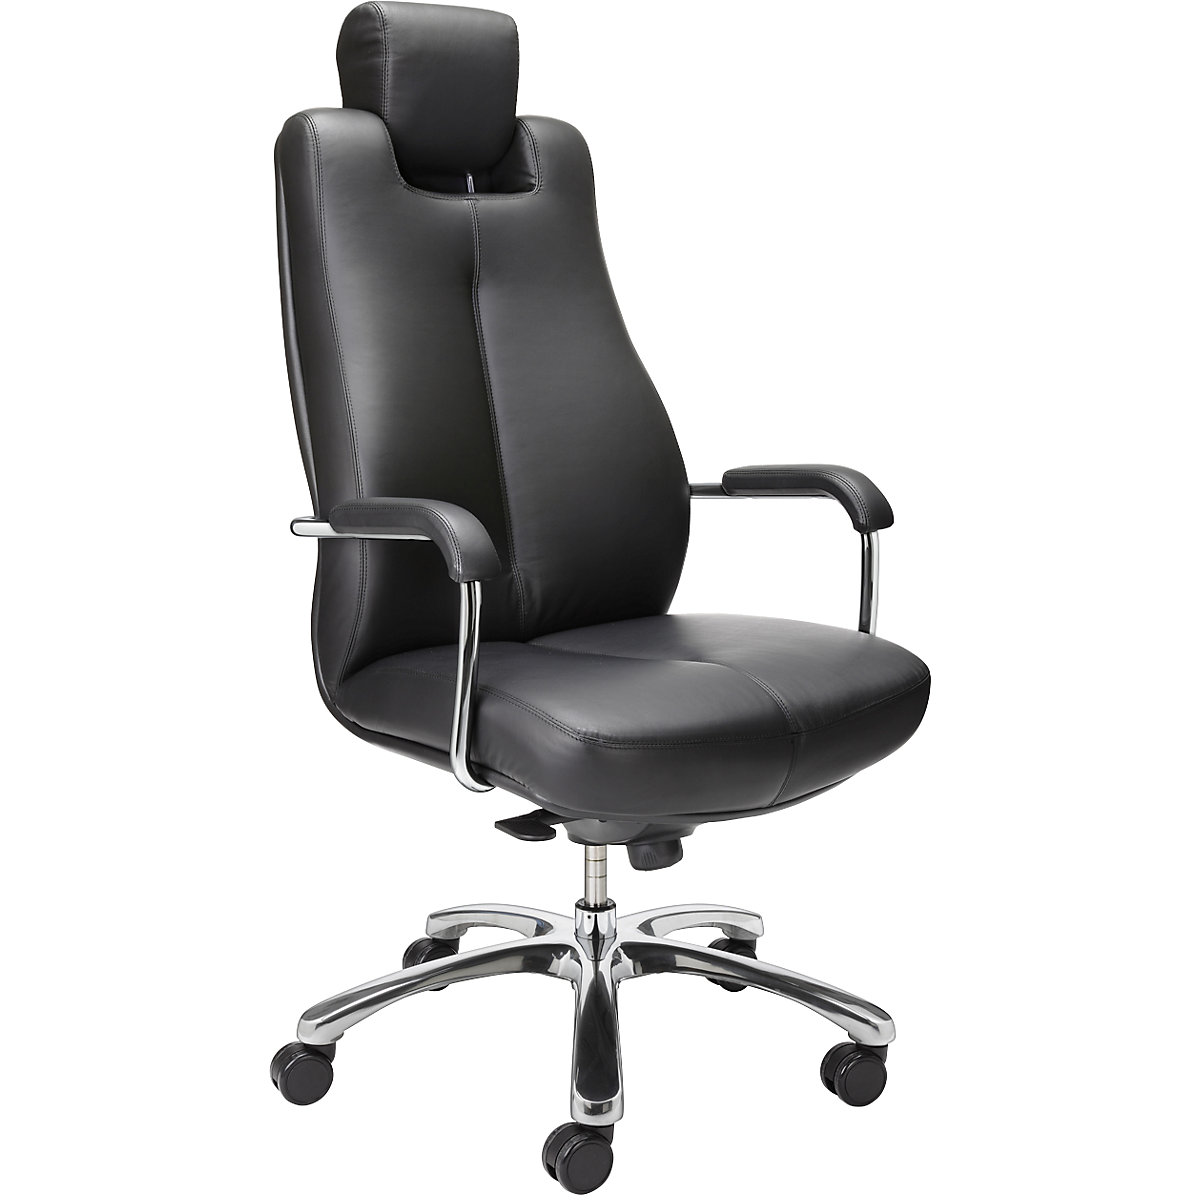 Udobna okretna stolica SONATA, s potporom za glavu s mogućnošću namještanja, kožna presvlaka u crnoj boji-2